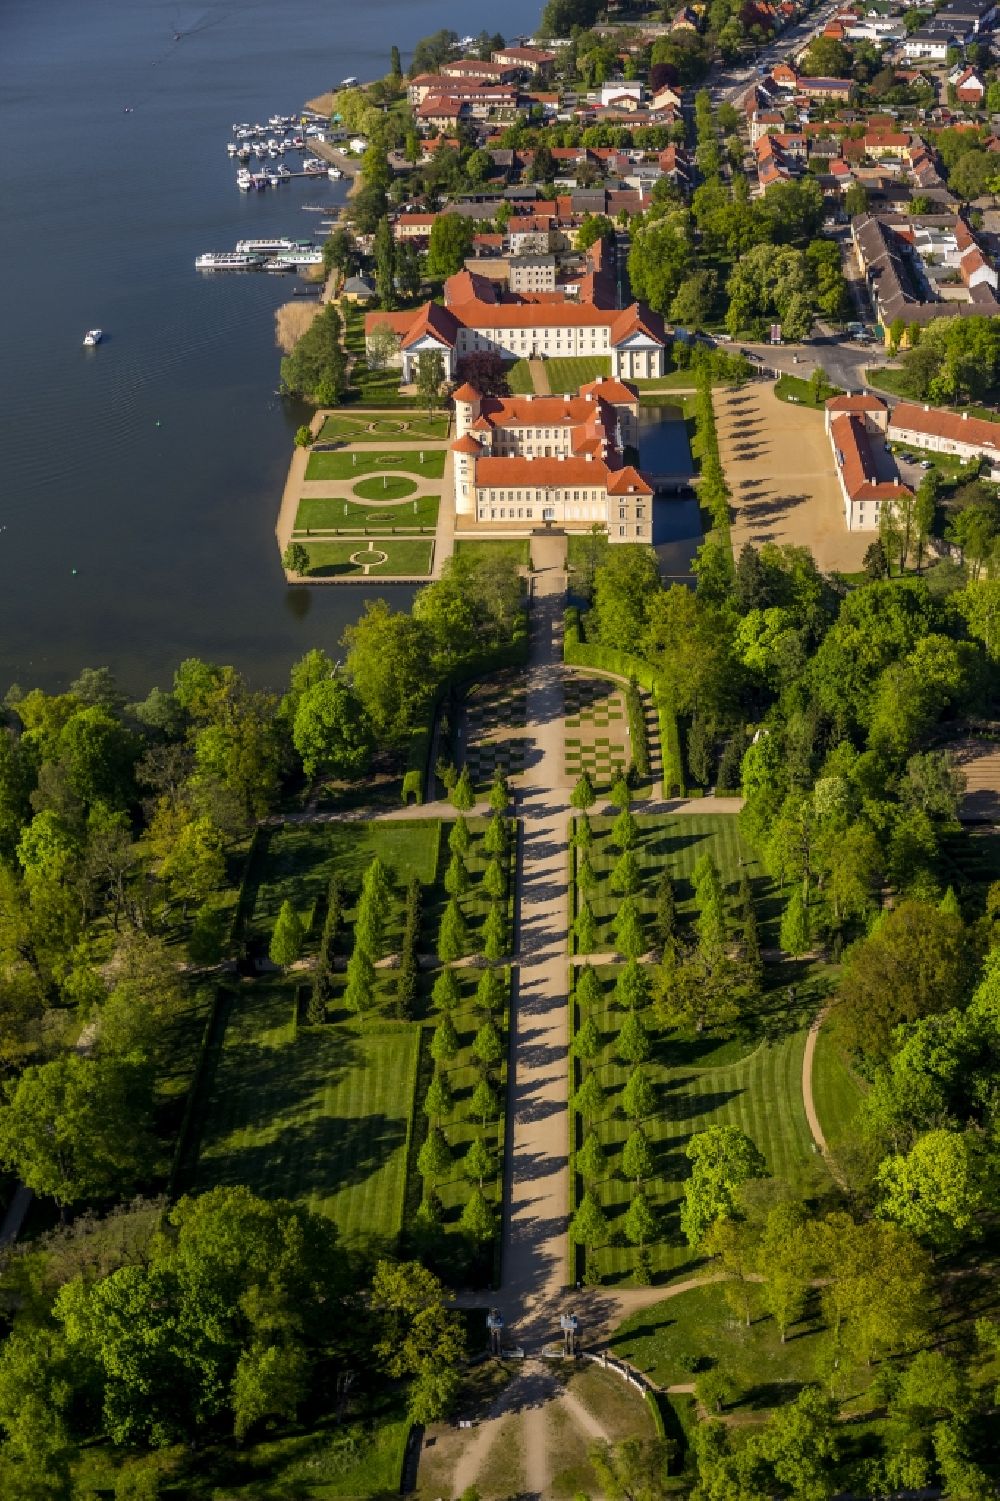 Rheinsberg aus der Vogelperspektive: Schloss Rheinsberg in Rheinsberg im Bundesland Brandenburg